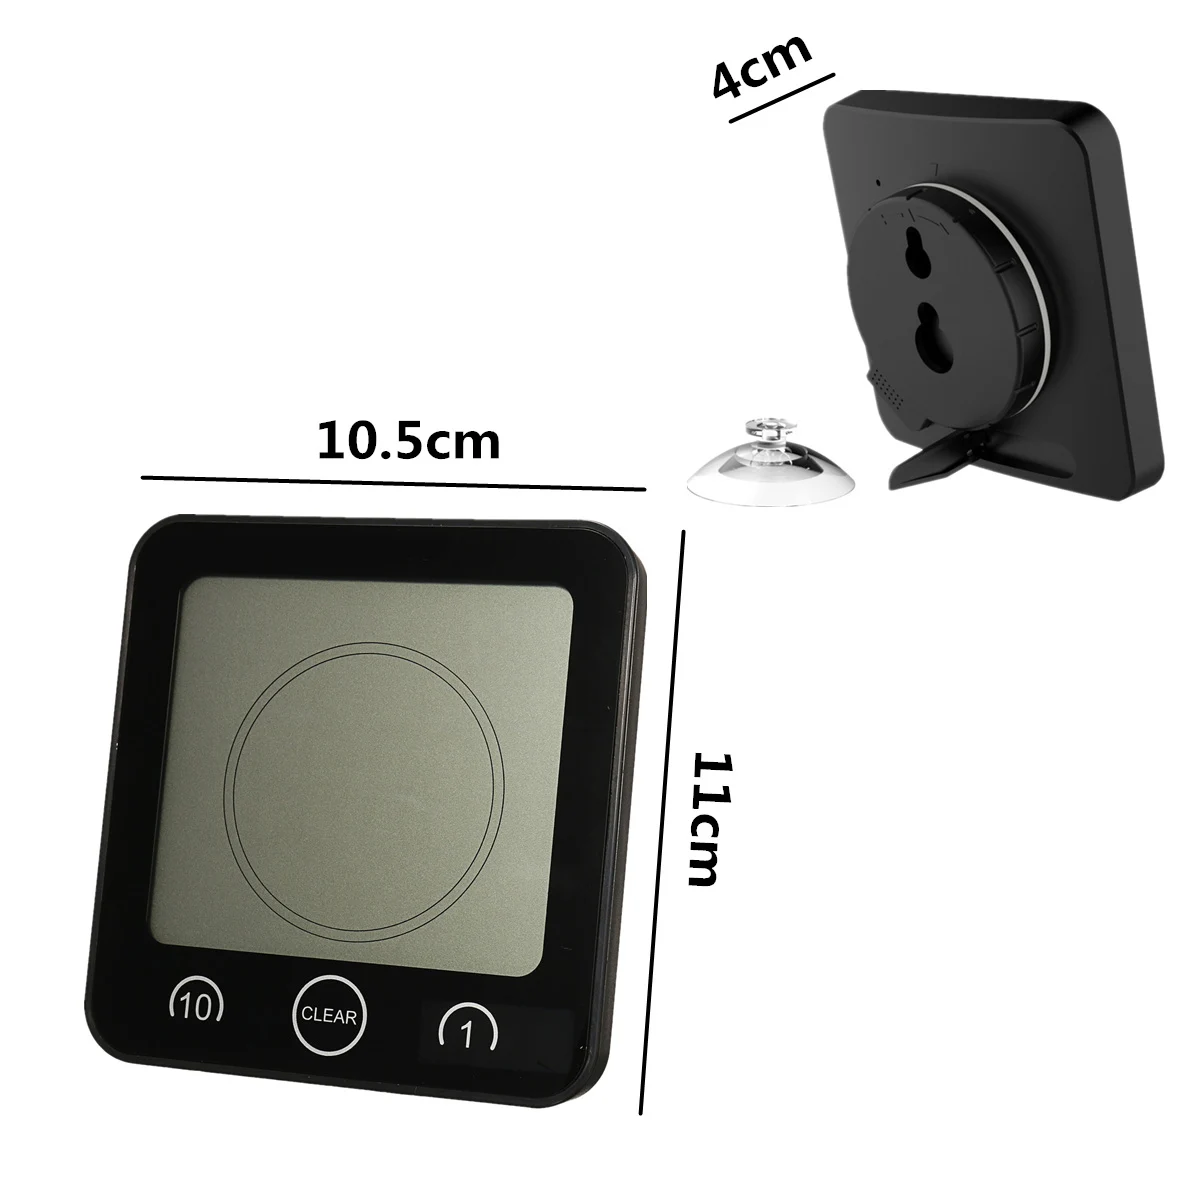 Цифровые настенные часы с ЖК-дисплеем, водонепроницаемые, для душа, ванной, настенные часы с присоской, будильник, таймер для ванной, измеритель температуры и влажности, часы